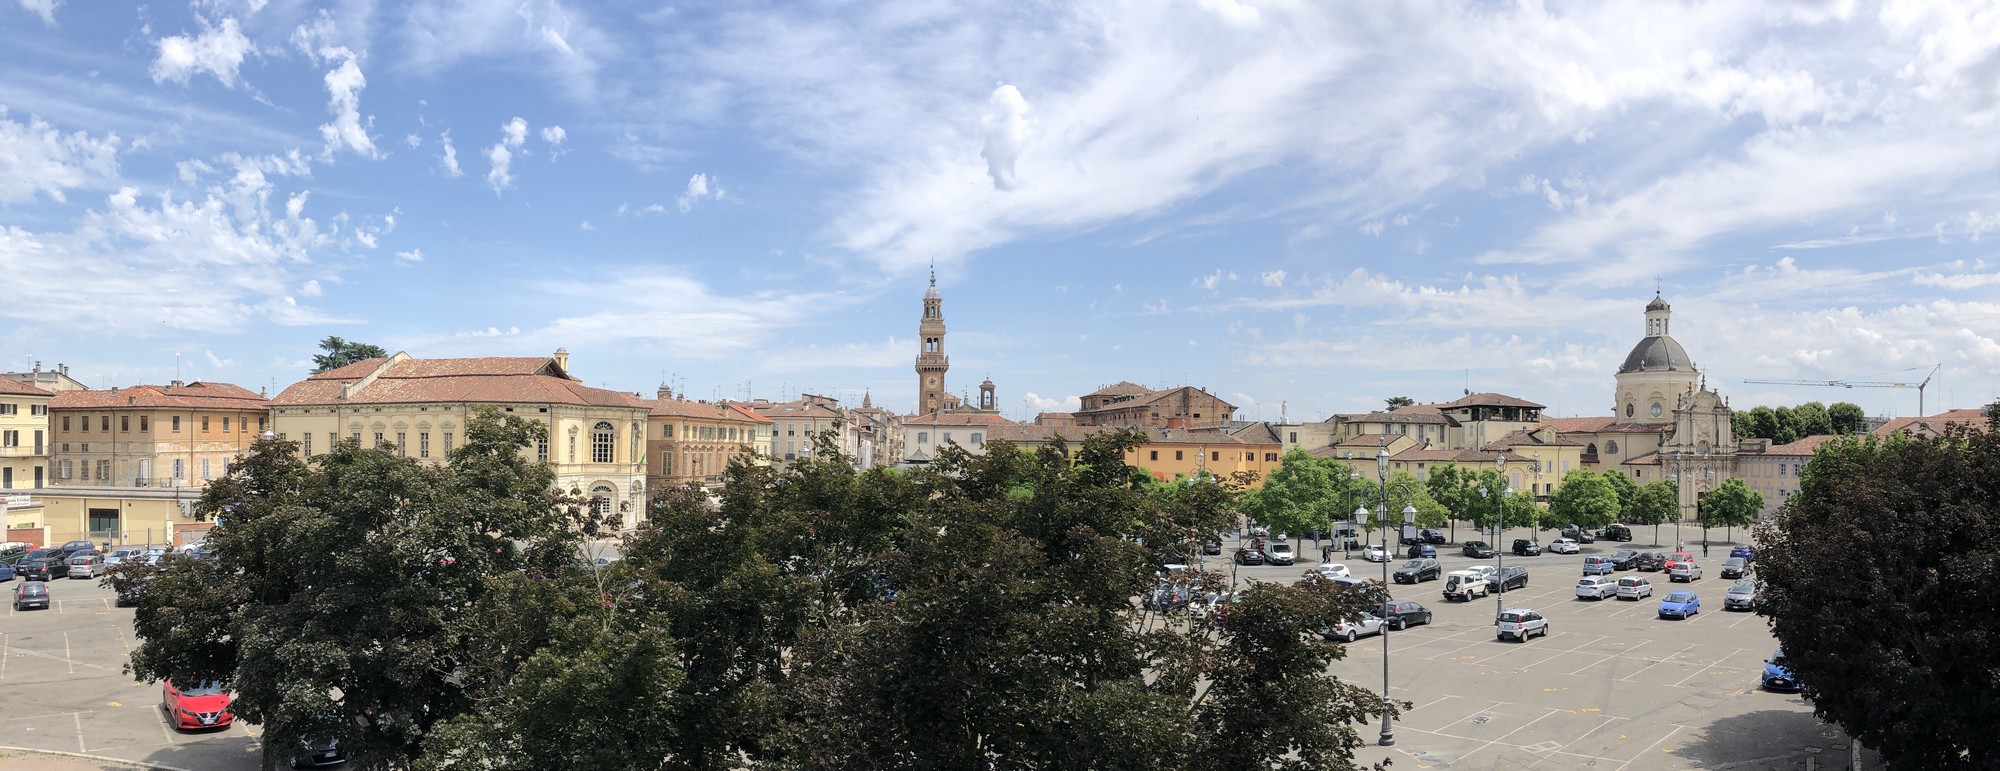 Casale Monferrato: i mercati nel periodo pasquale